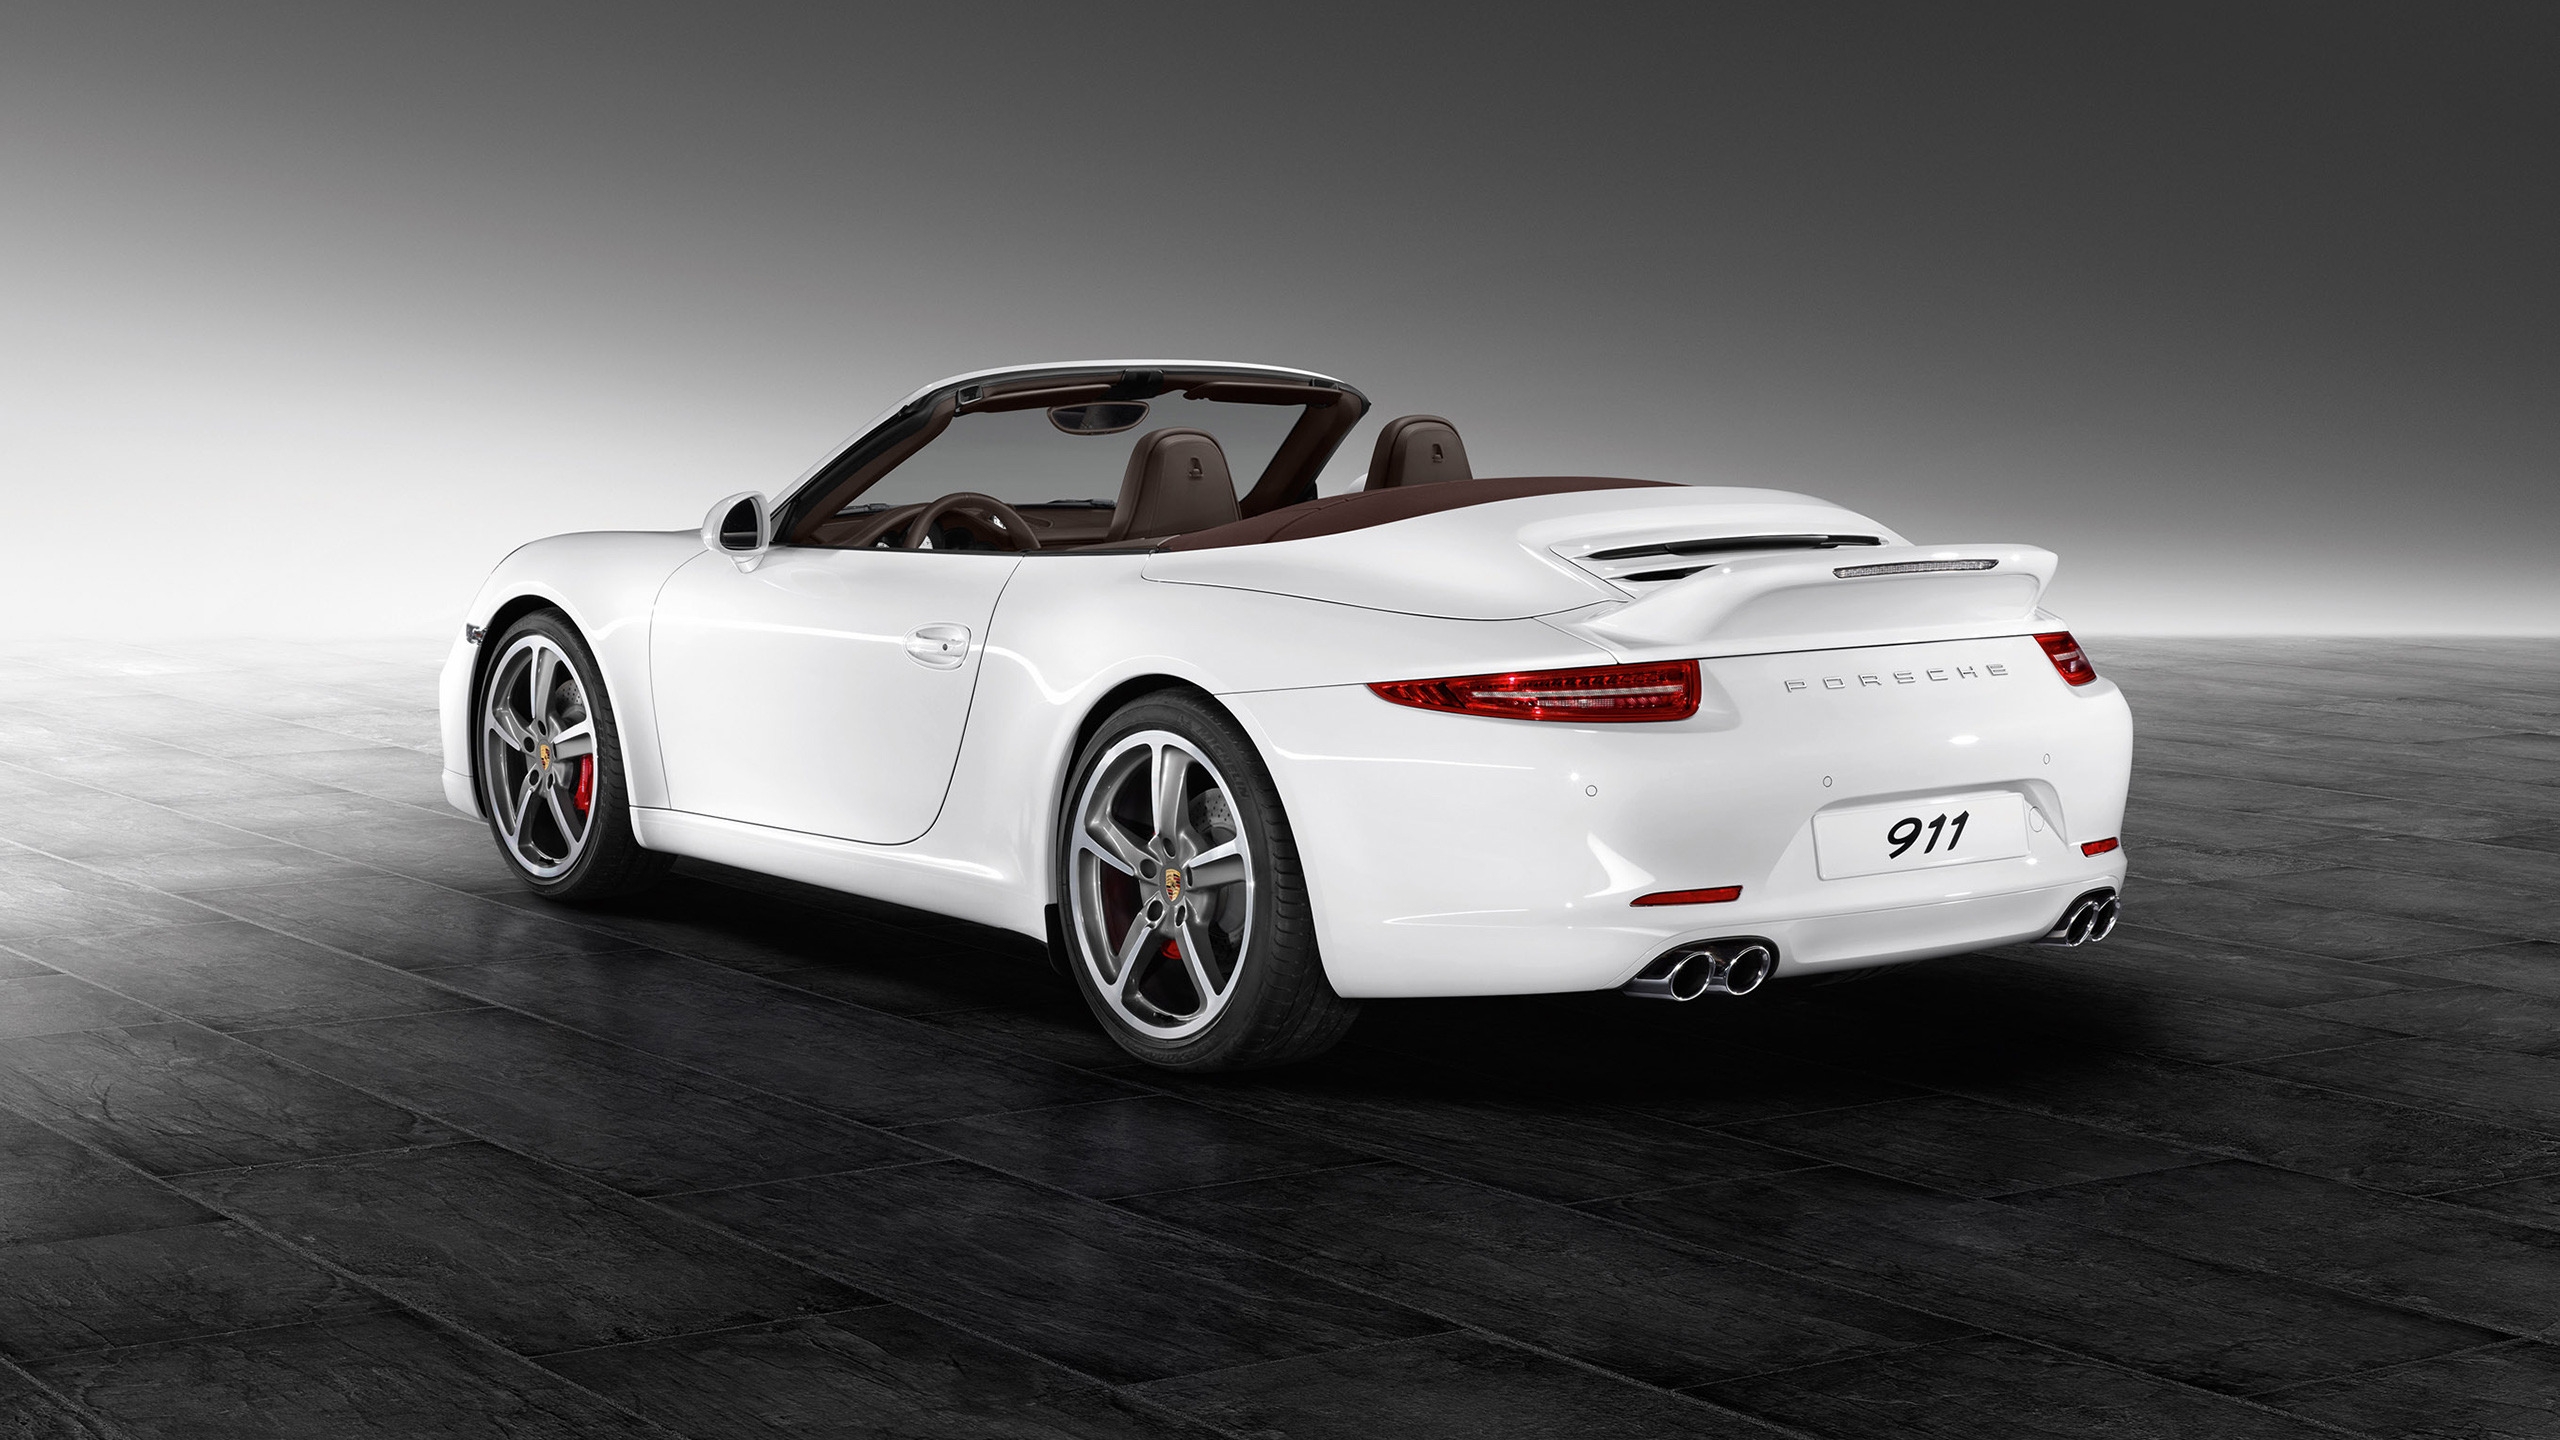 White Porsche 911 Carrera S for 2560x1440 HDTV resolution